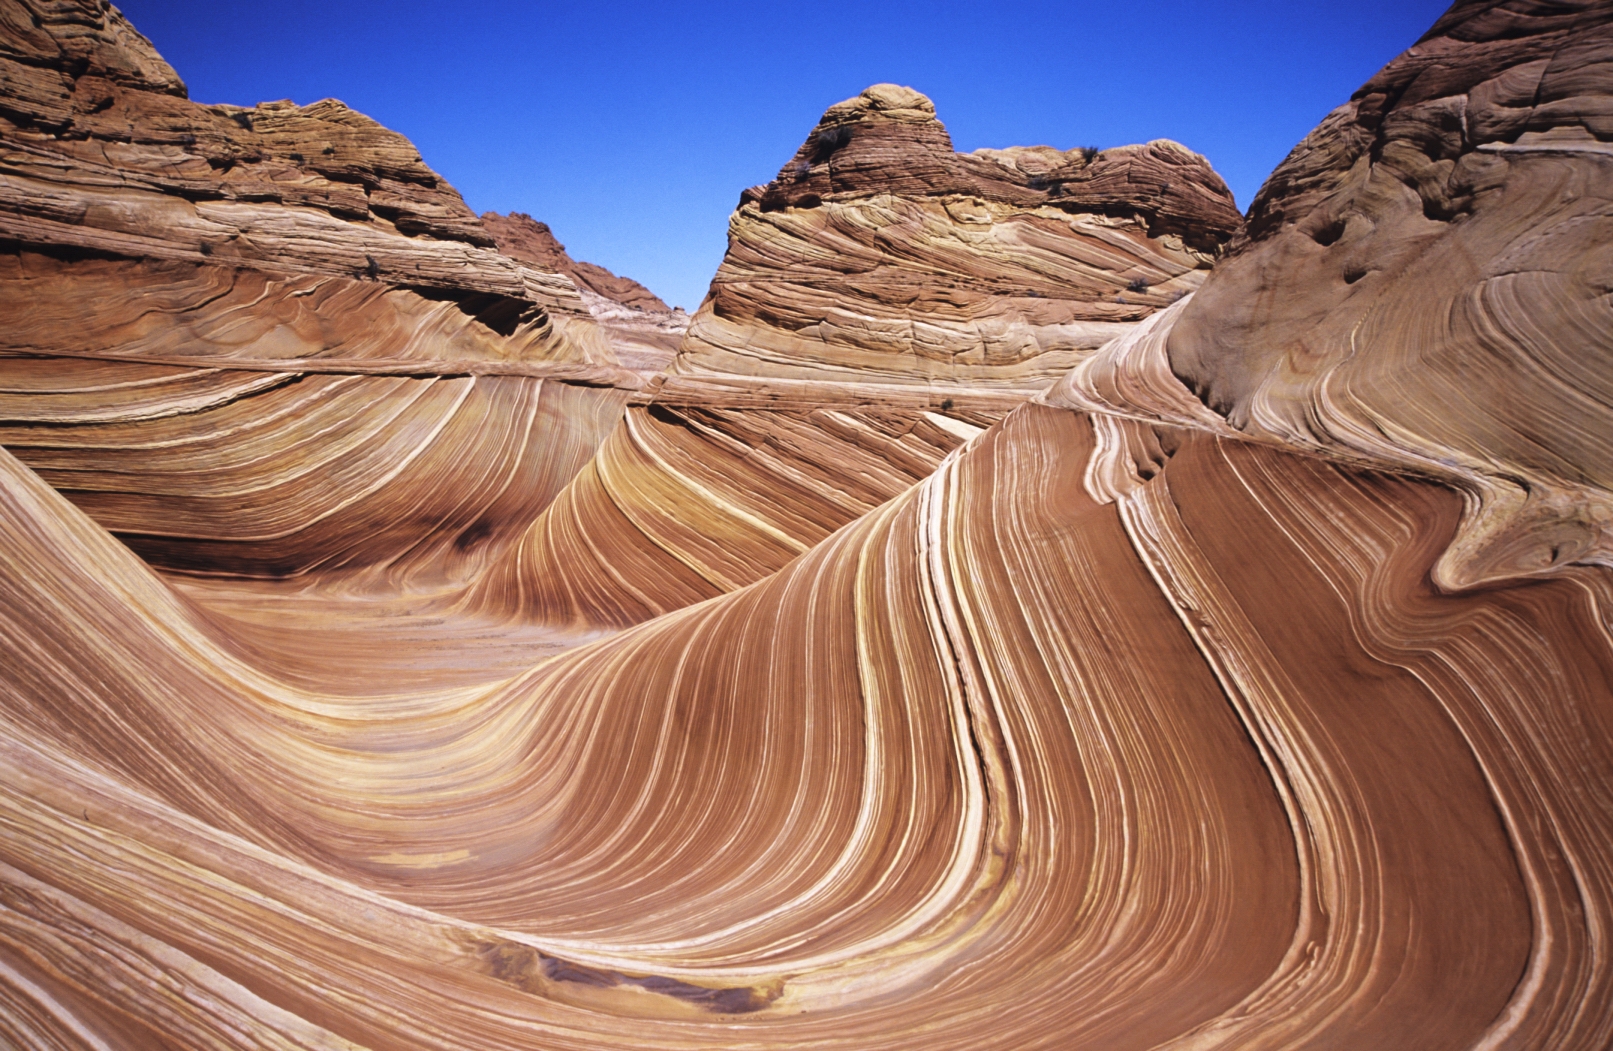 "Аризонская волна" — песчаниковая скальная формация на границе штатов Аризона и Юта, США. Фото © Wikipedia